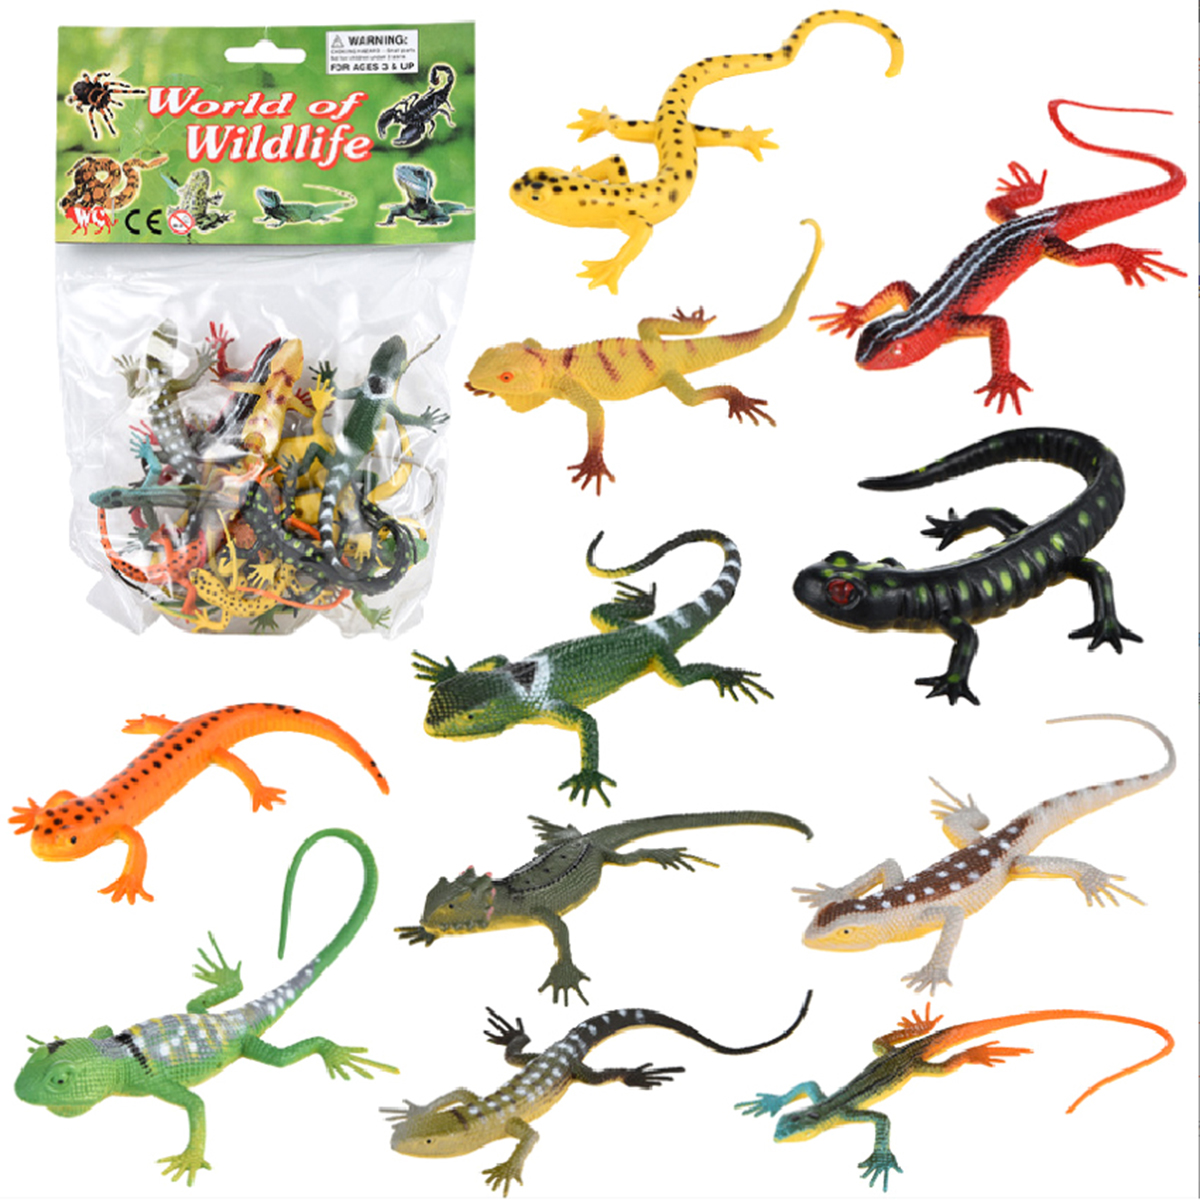 Bộ đồ chơi 12 thằn lằn, tắc kè giả Safari Animal World dài 14 cm mẫu 2 dùng để khám phá và chọc ghẹo bạn - New4all